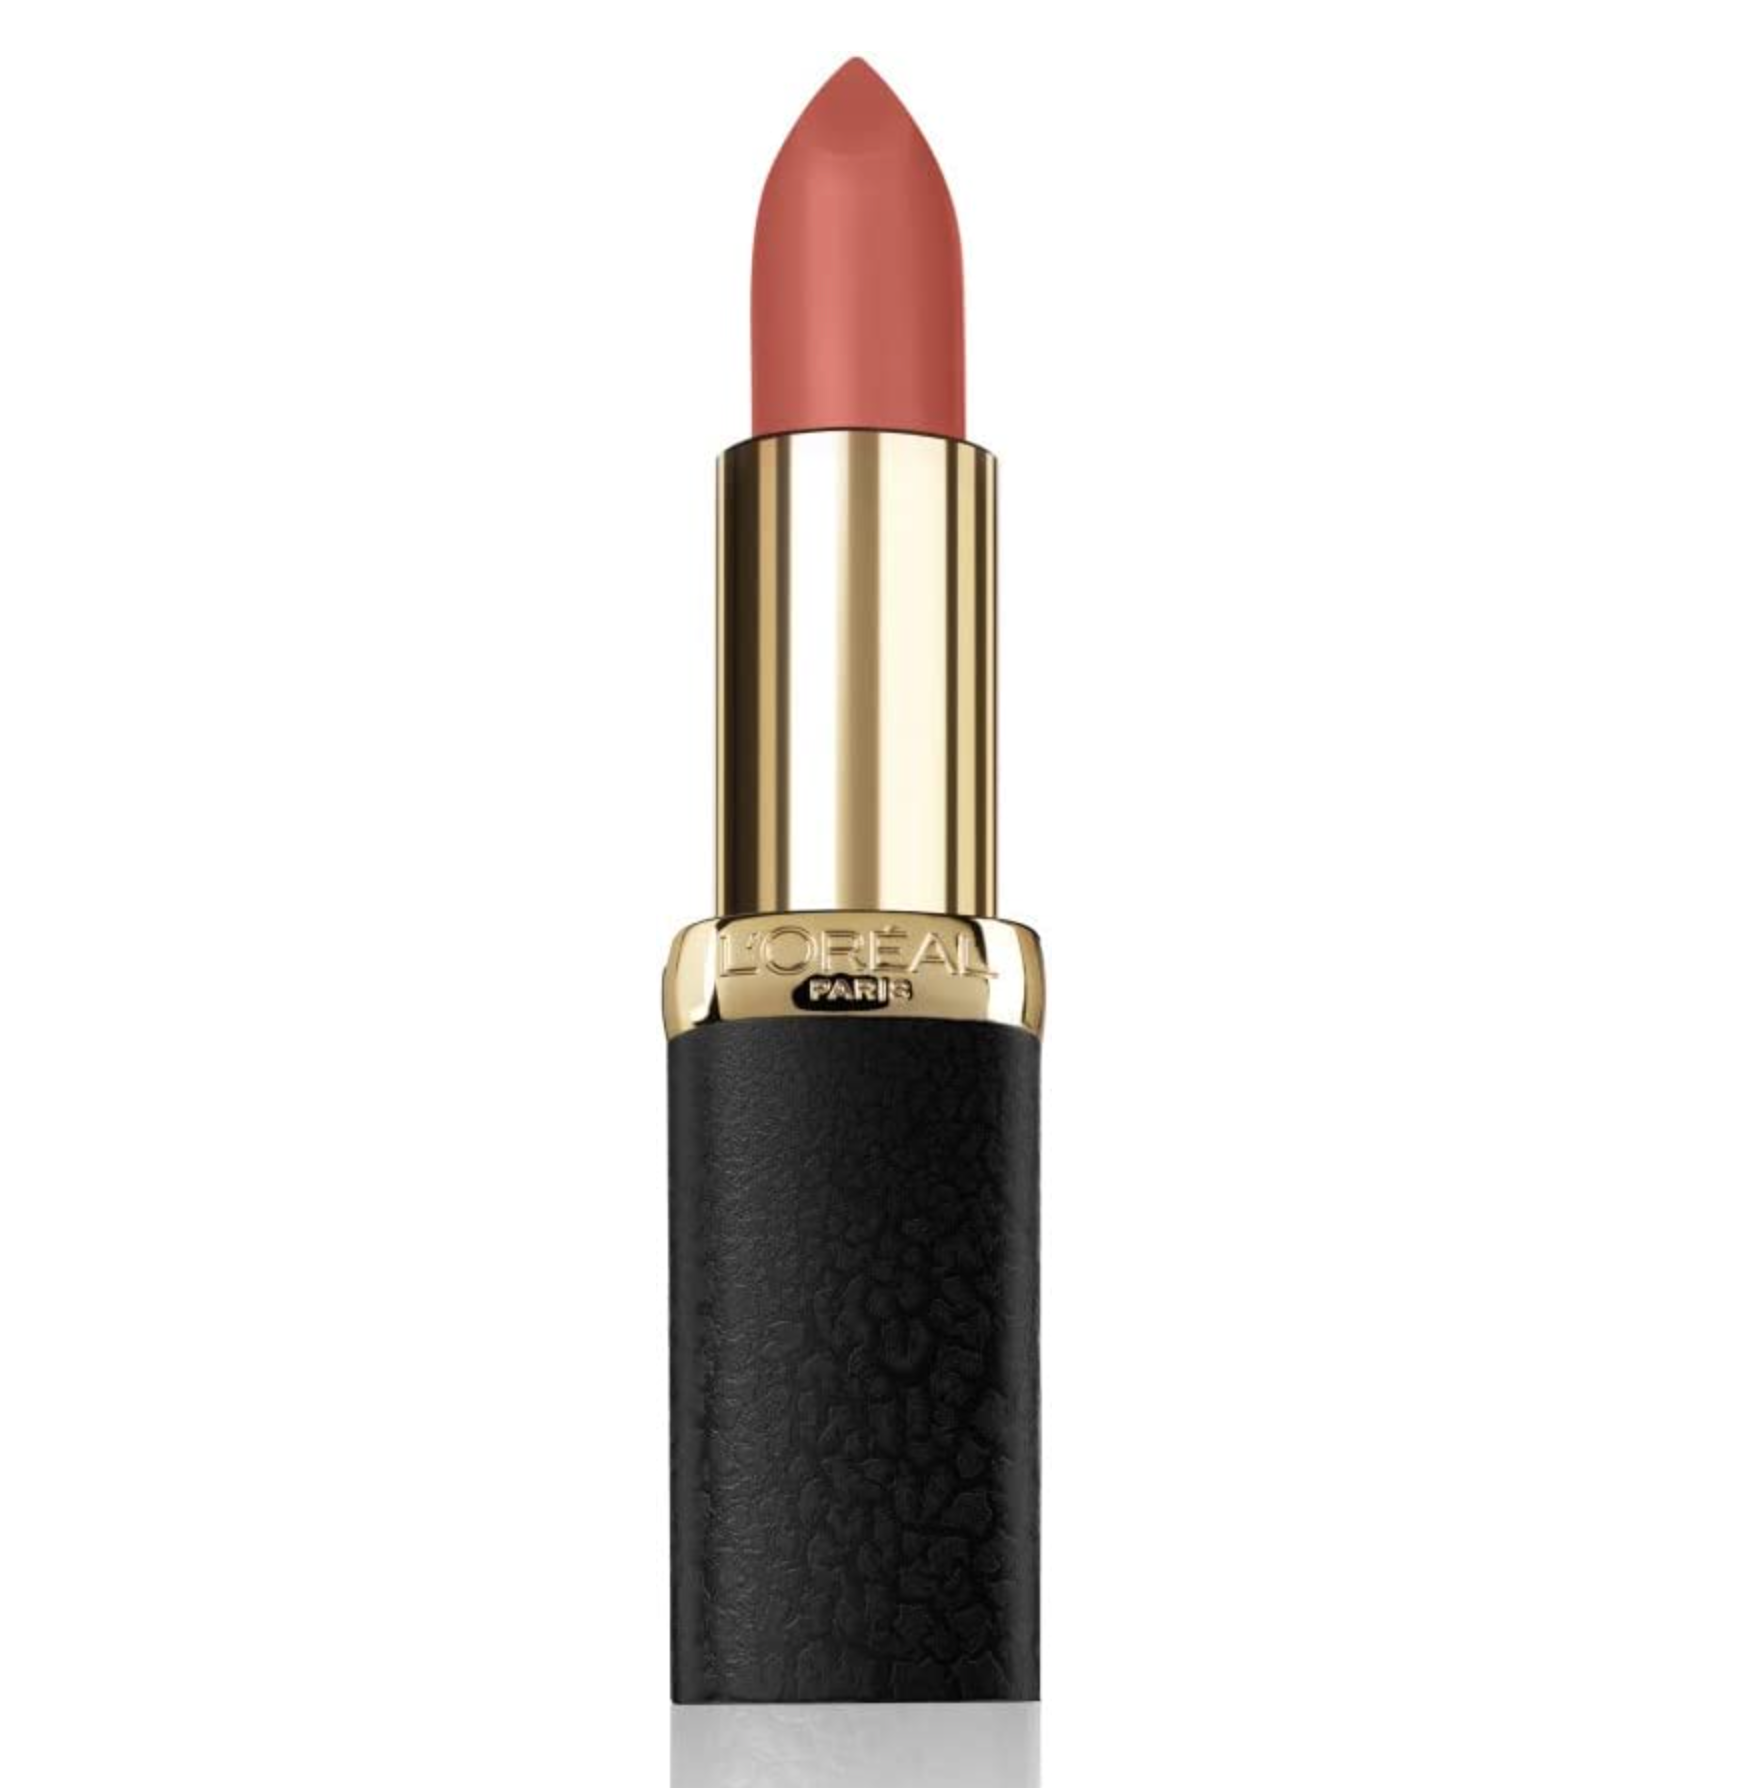 L'Oreal Color Riche Matte Lipstick - 633 Moka Chic